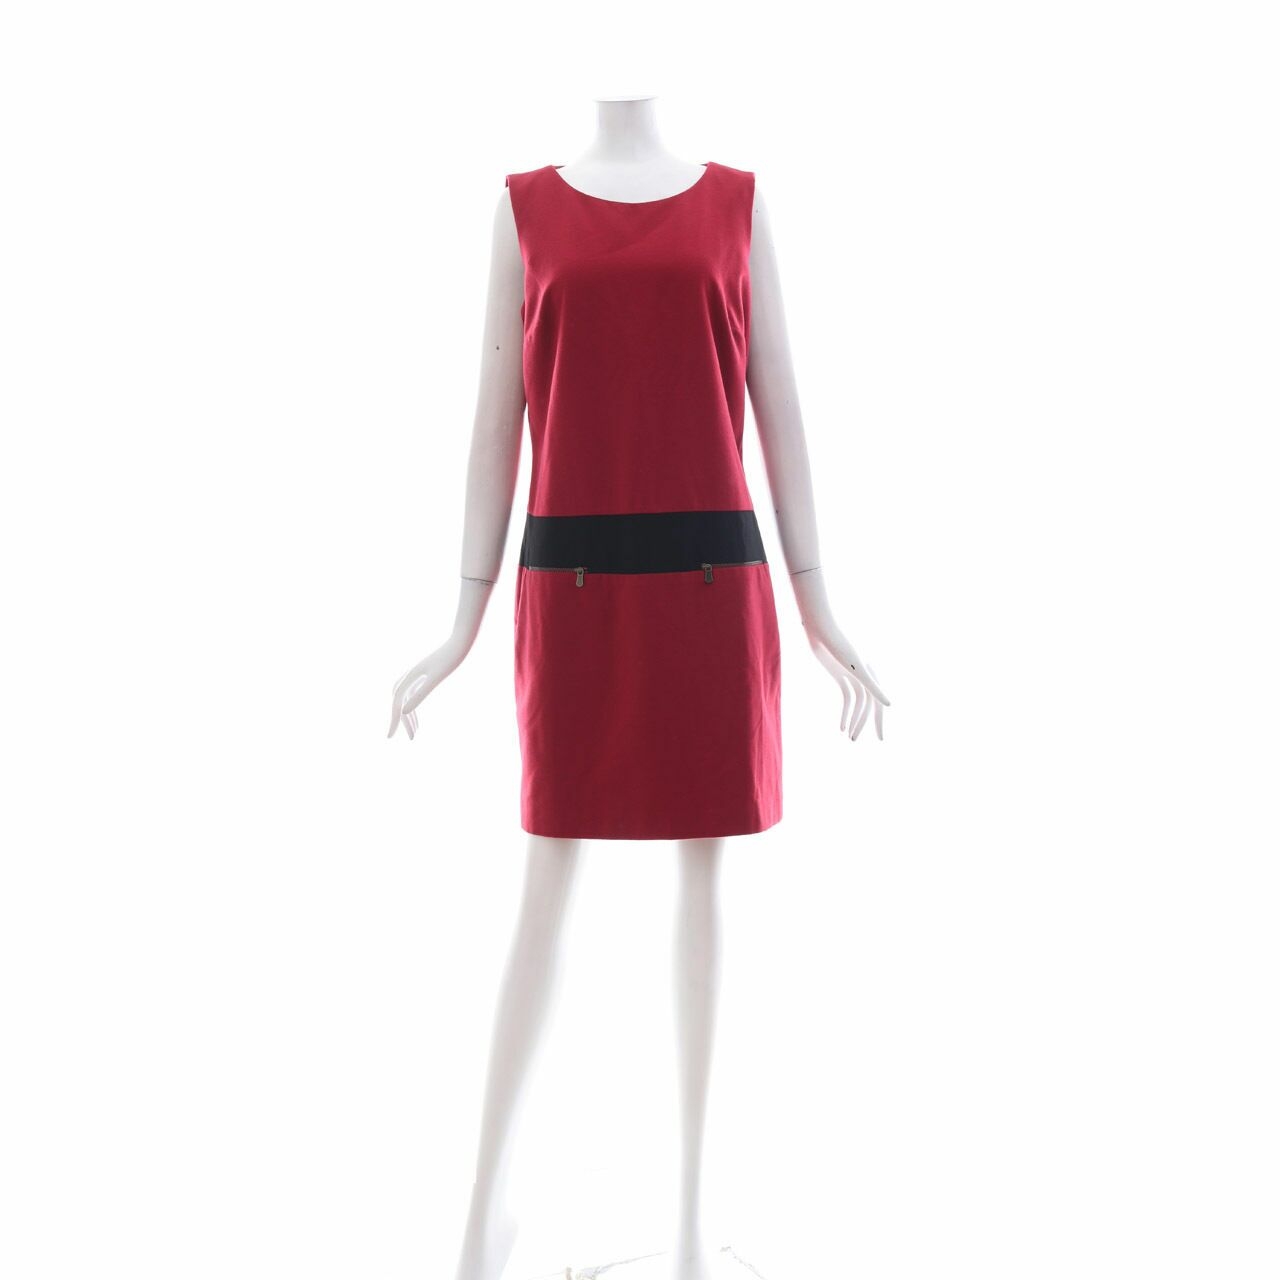 Mexx Red Zipper Mini Dress